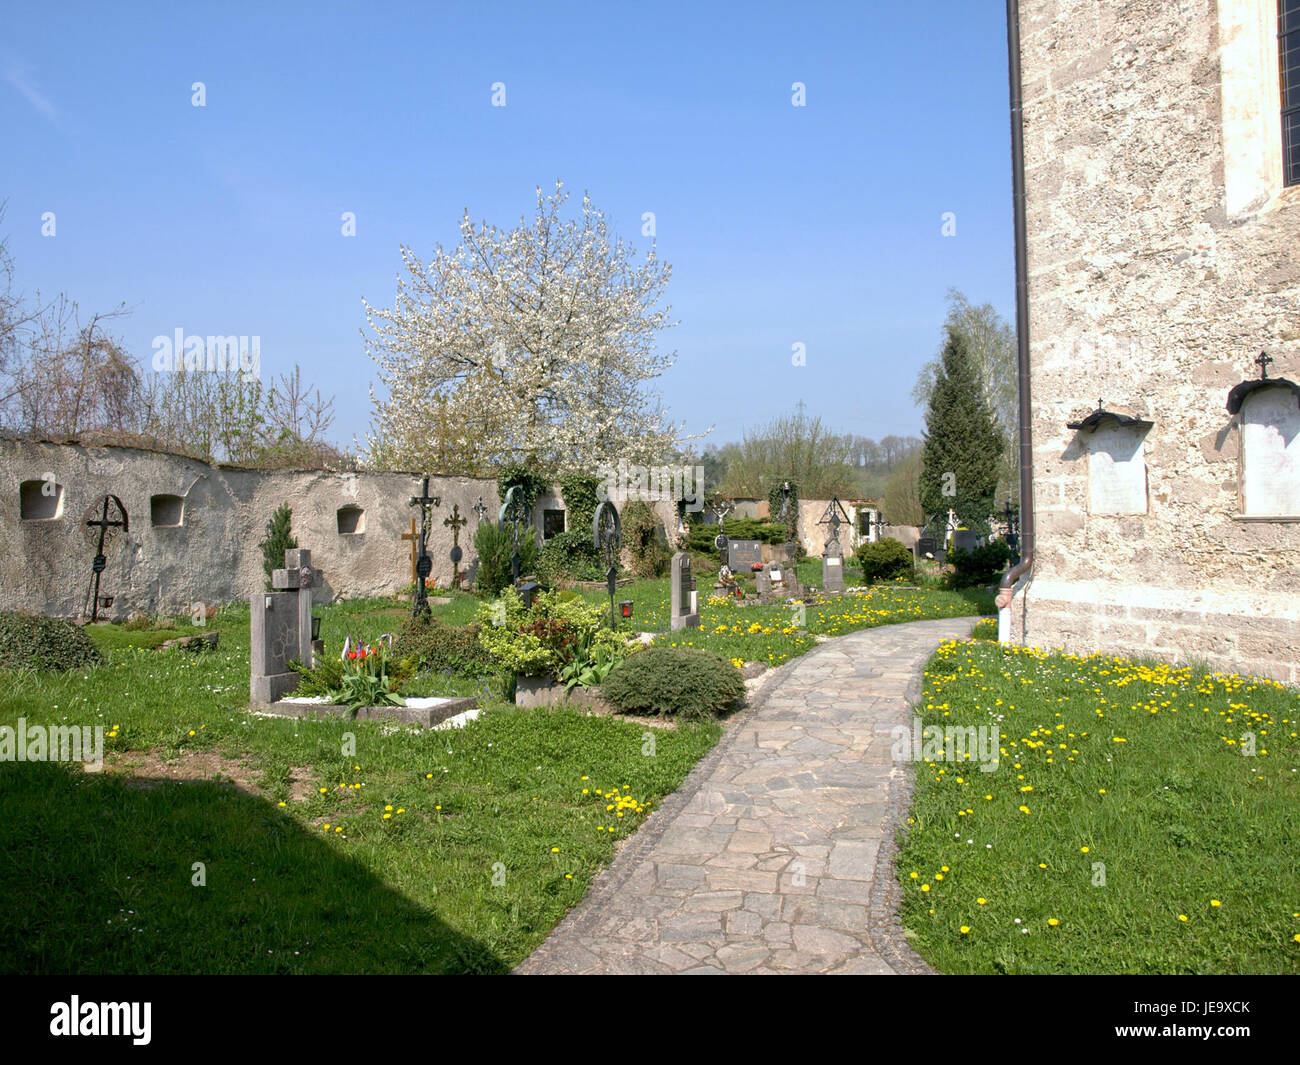 2013.04.24 - Haidershofen - Pfarrkirche hl. Severin und Friedhof - 05 Stock Photo